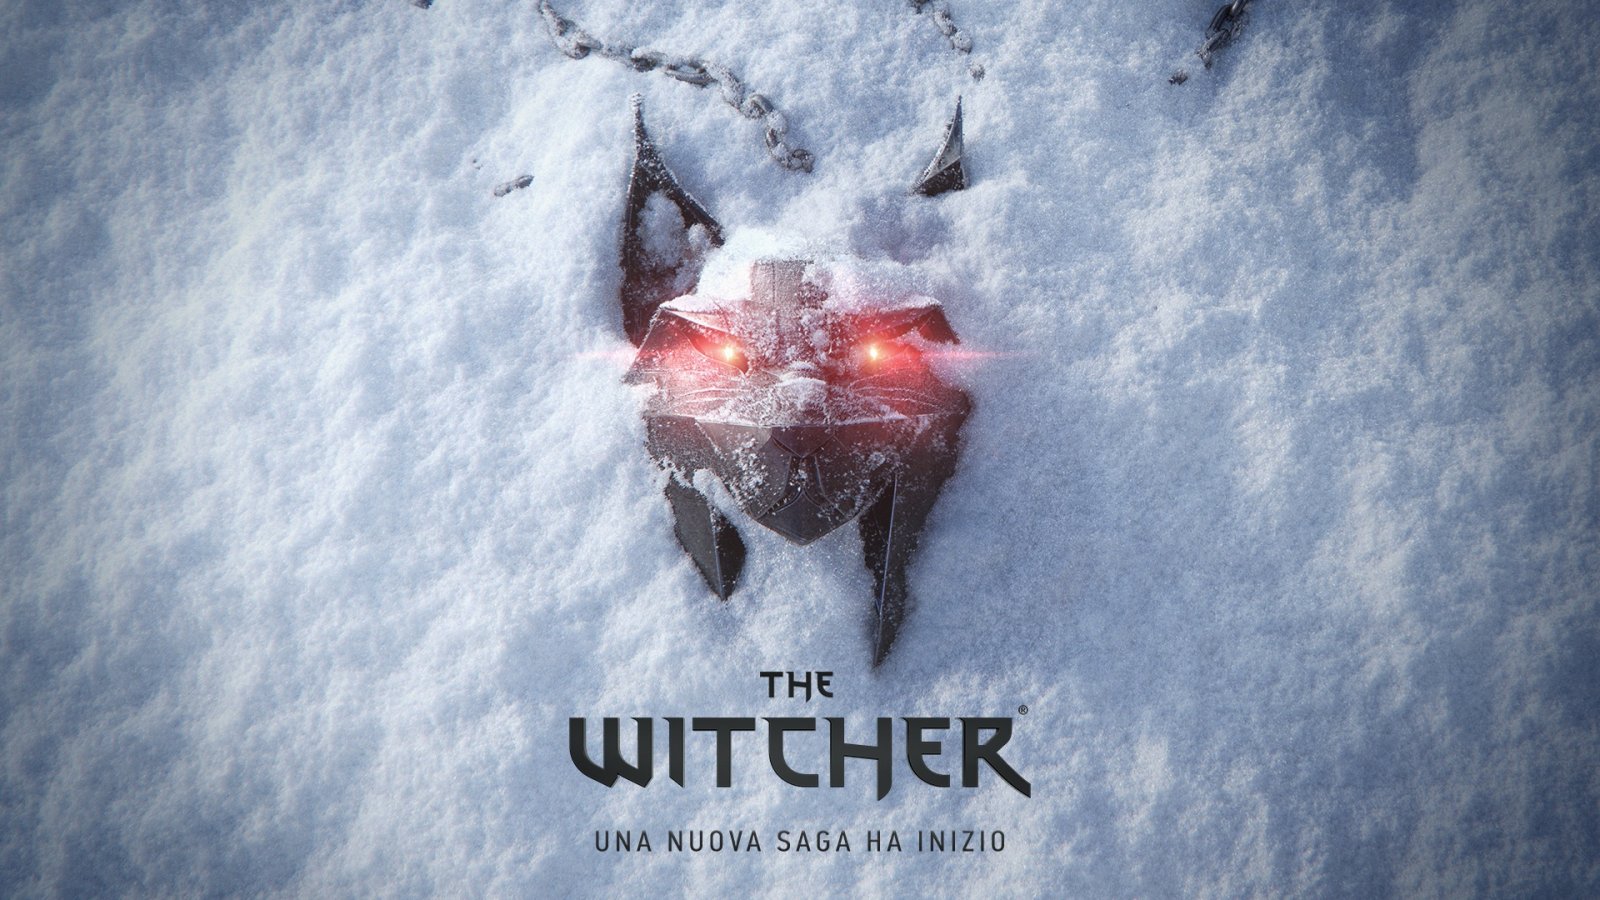 The Witcher Polaris: lo sviluppo aumenta di ritmo, CD Projekt RED svela come sono allocati i team